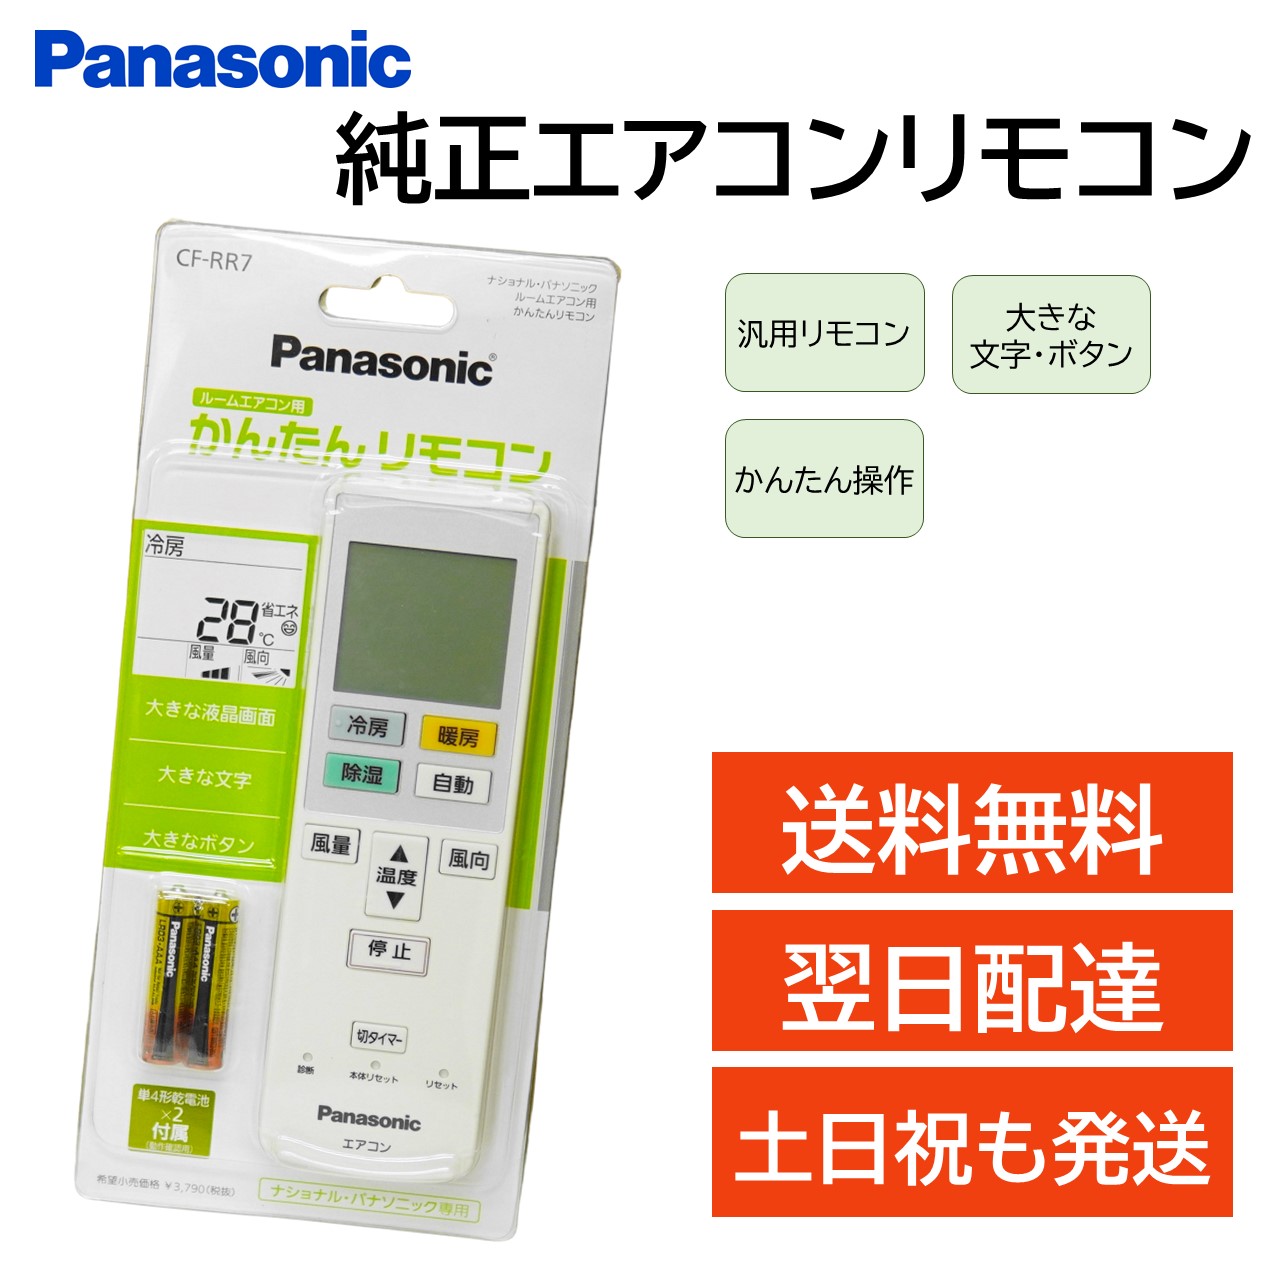 PanasonicパナソニックACエアコンリモコンA75C3308 - エアコン